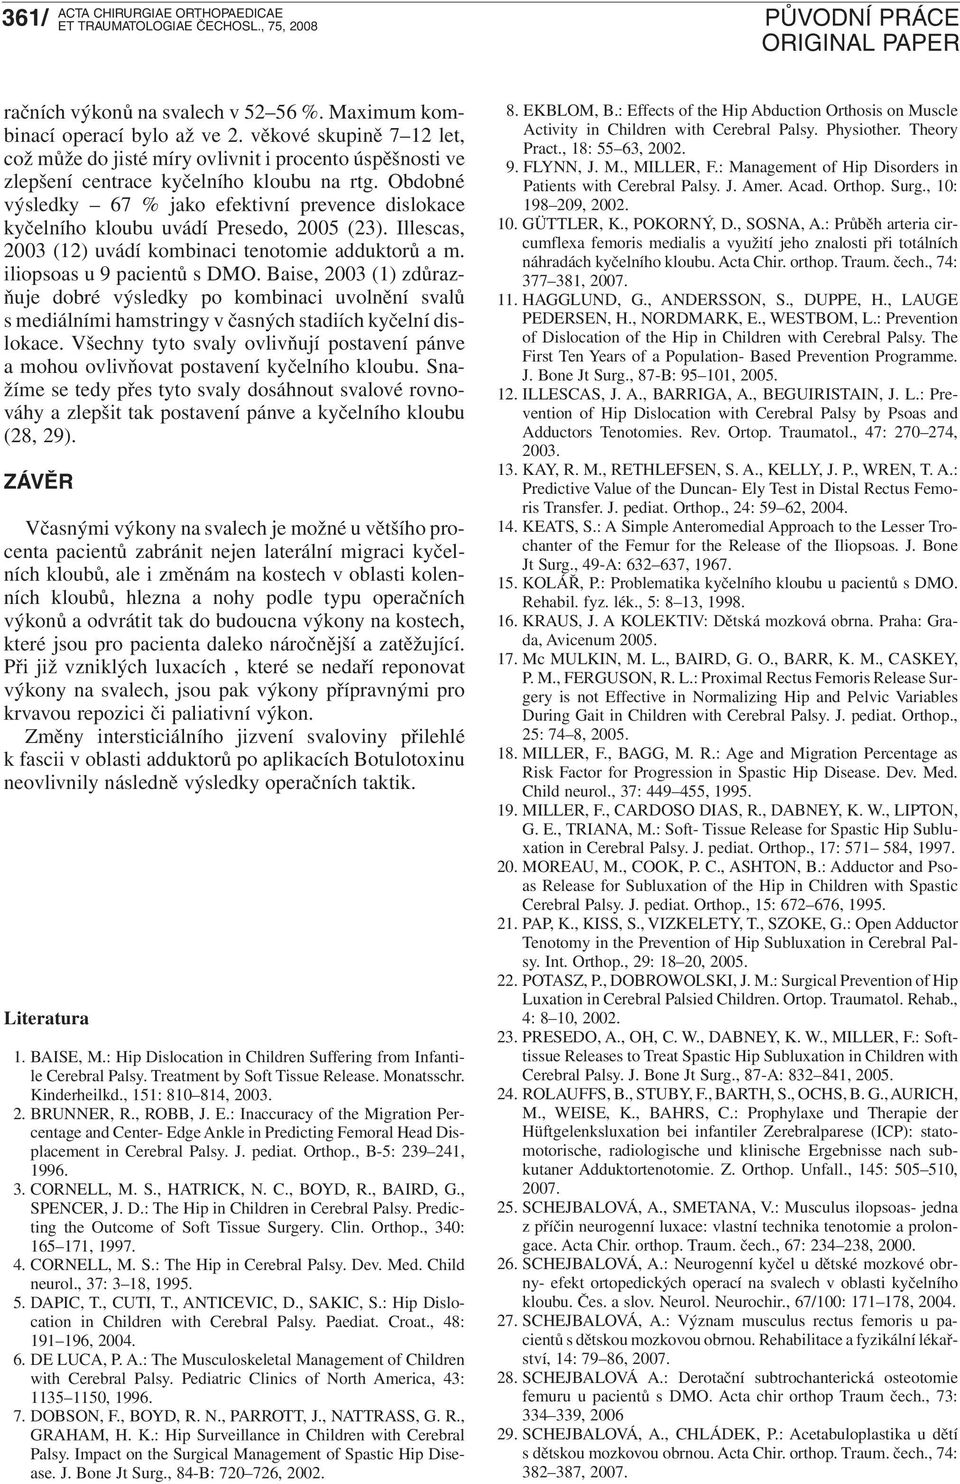 Obdobné výsledky 67 % jako efektivní prevence dislokace kyčelního kloubu uvádí Presedo, 2005 (23). Illescas, 2003 (12) uvádí kombinaci tenotomie adduktorů a m. iliopsoas u 9 pacientů s DMO.